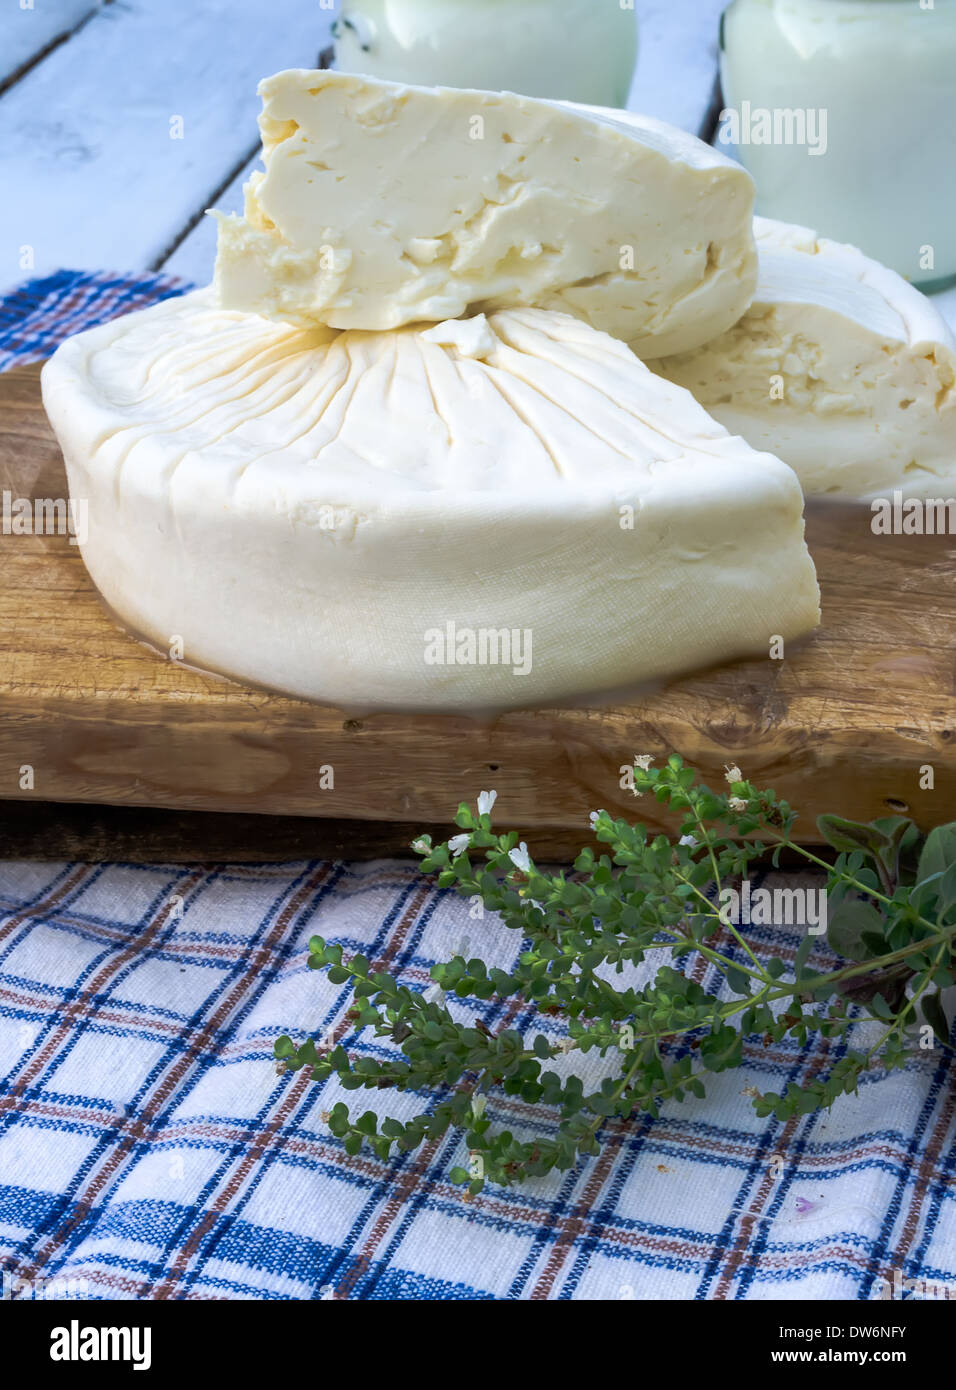 Homemade bulgarian white brined cheese Stock Photo